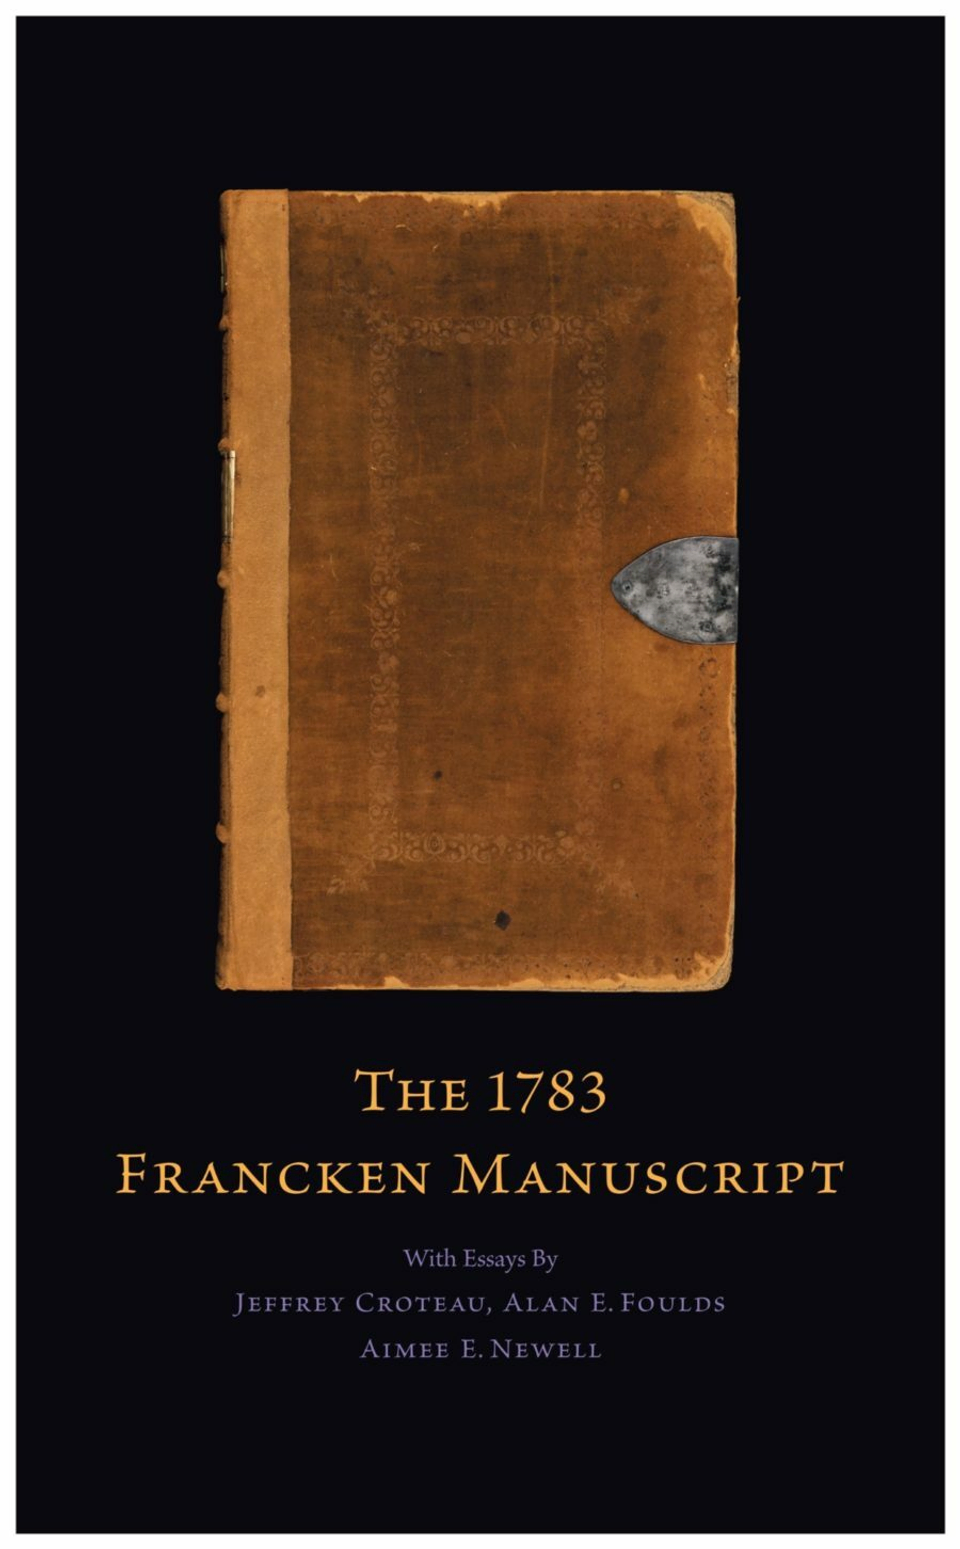 The 1783 Francken Manuscript